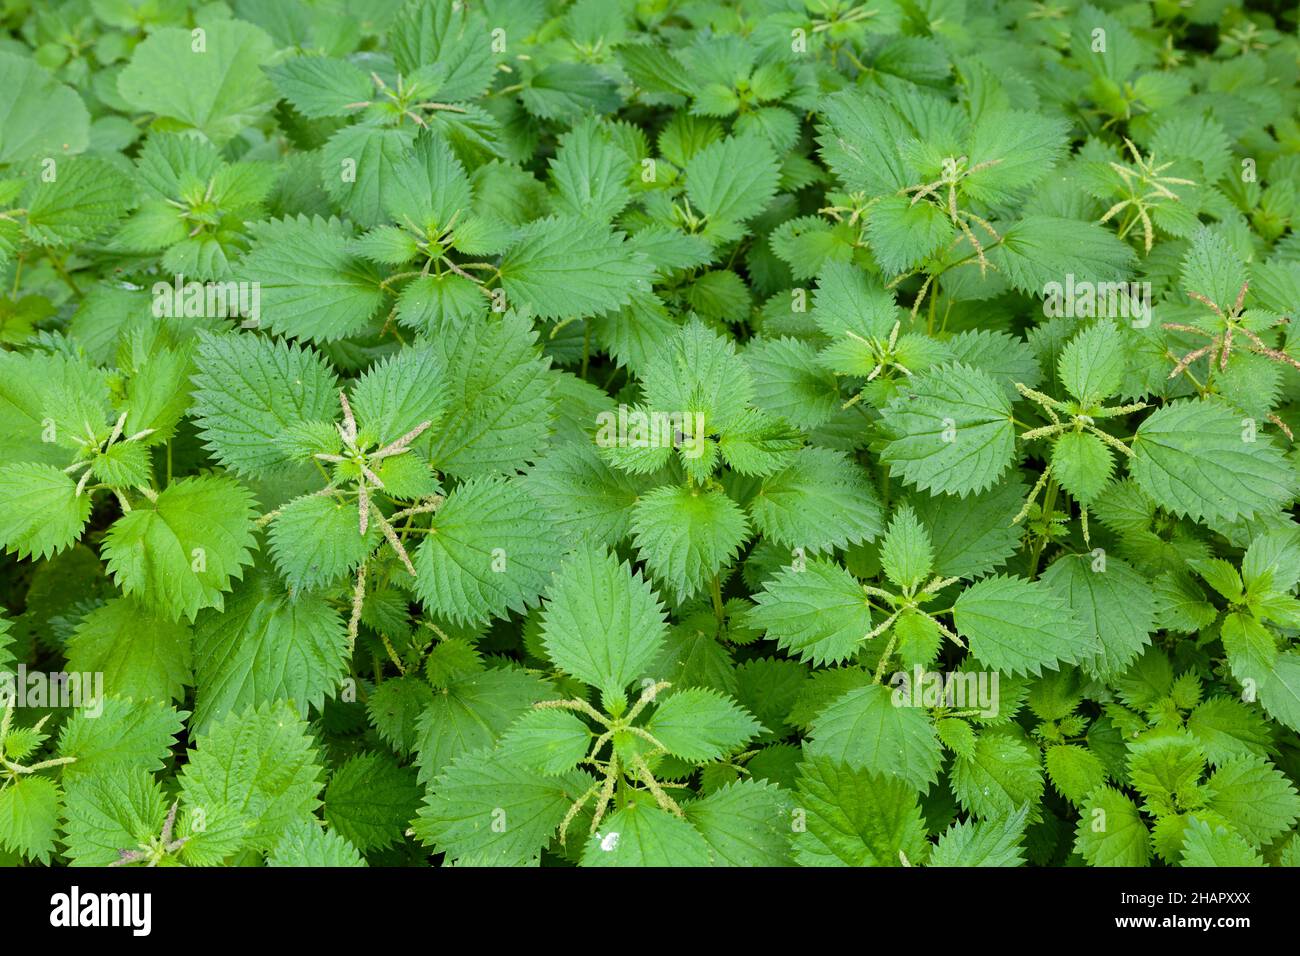 Overgrown garden full of green stinging nettles Stock Photo